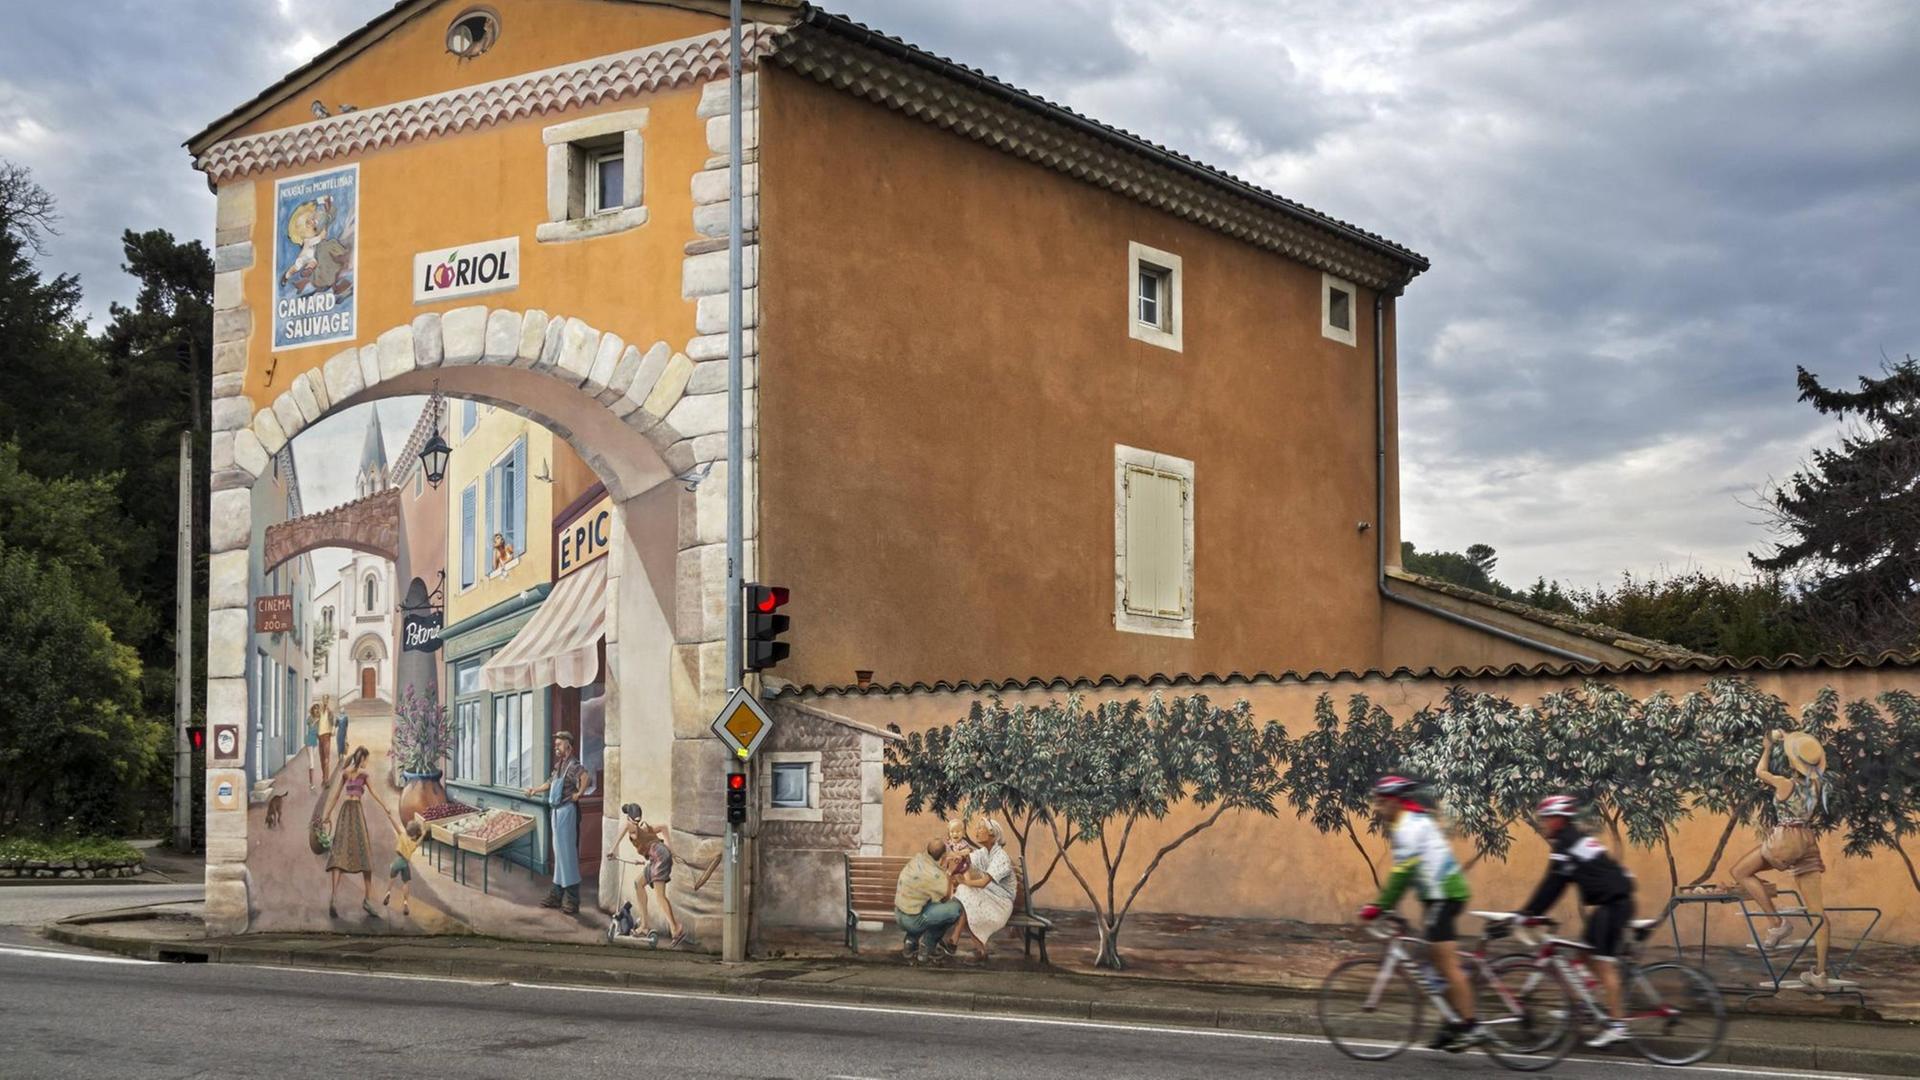 Ein Gebäude mit einer alten gemalten Fassadenwerbung für den Nougat Canard Sauvage an der historischen Nationalstraße 7 bei Loriol-sur-Drome. Im Vordergrund 2 Sportler auf ihren Rennrädern.